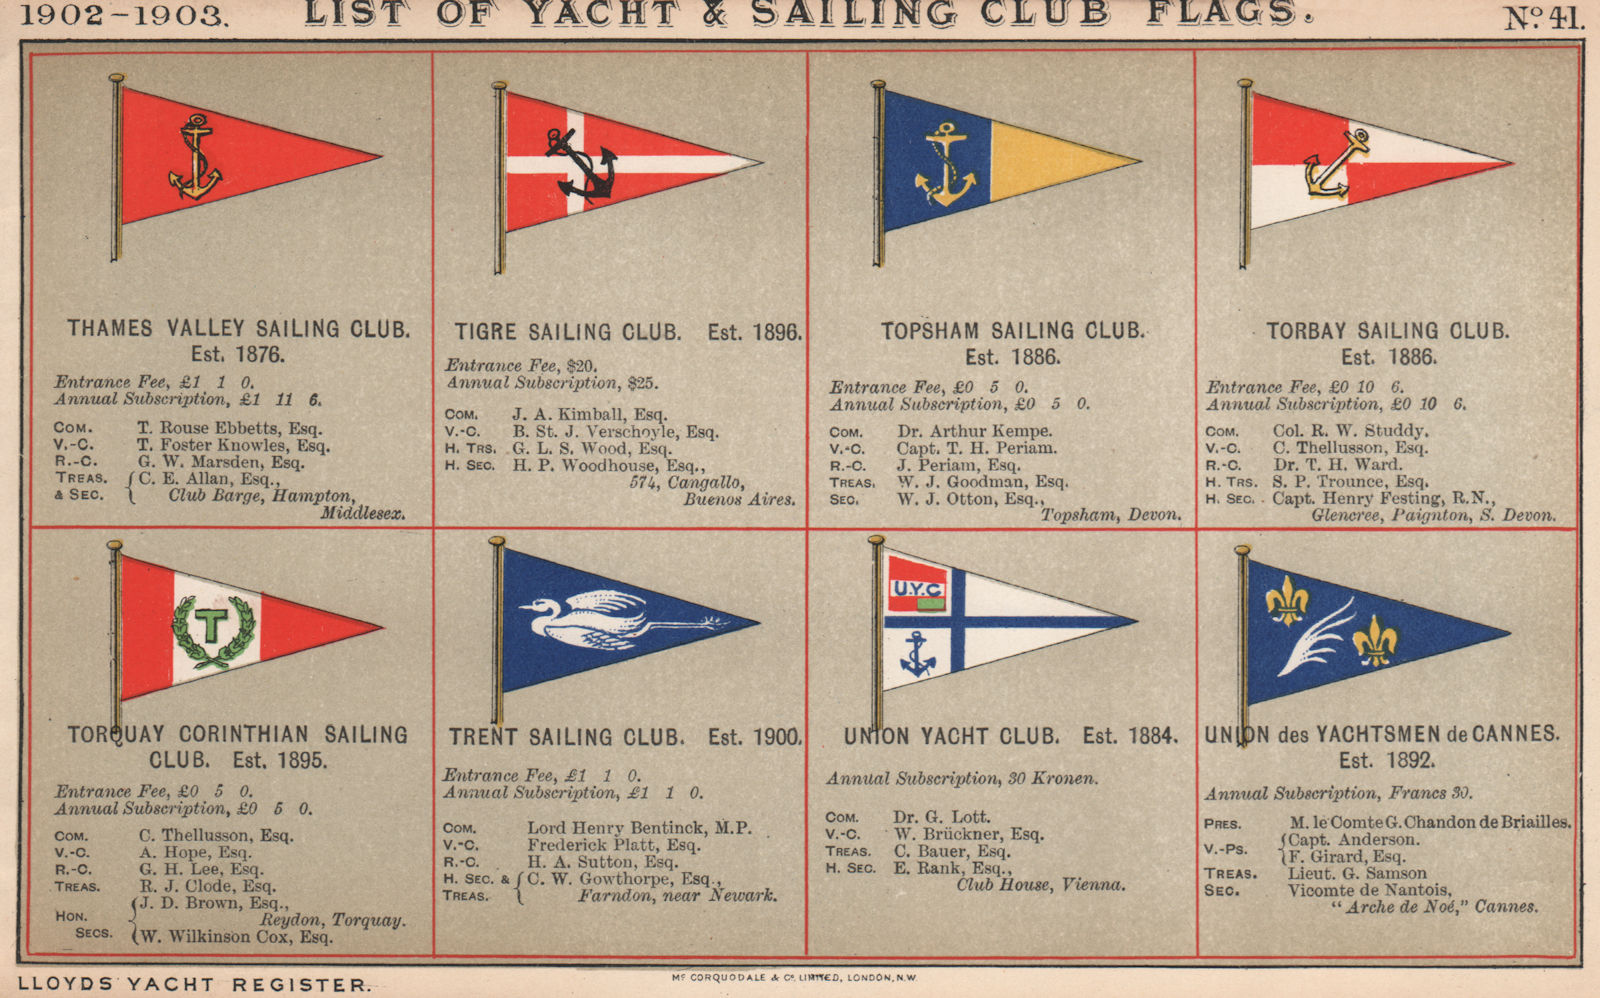 YACHT & SAILING CLUB FLAGS T-U. Thames Valley - Union Yachtsmen de Cannes  1902